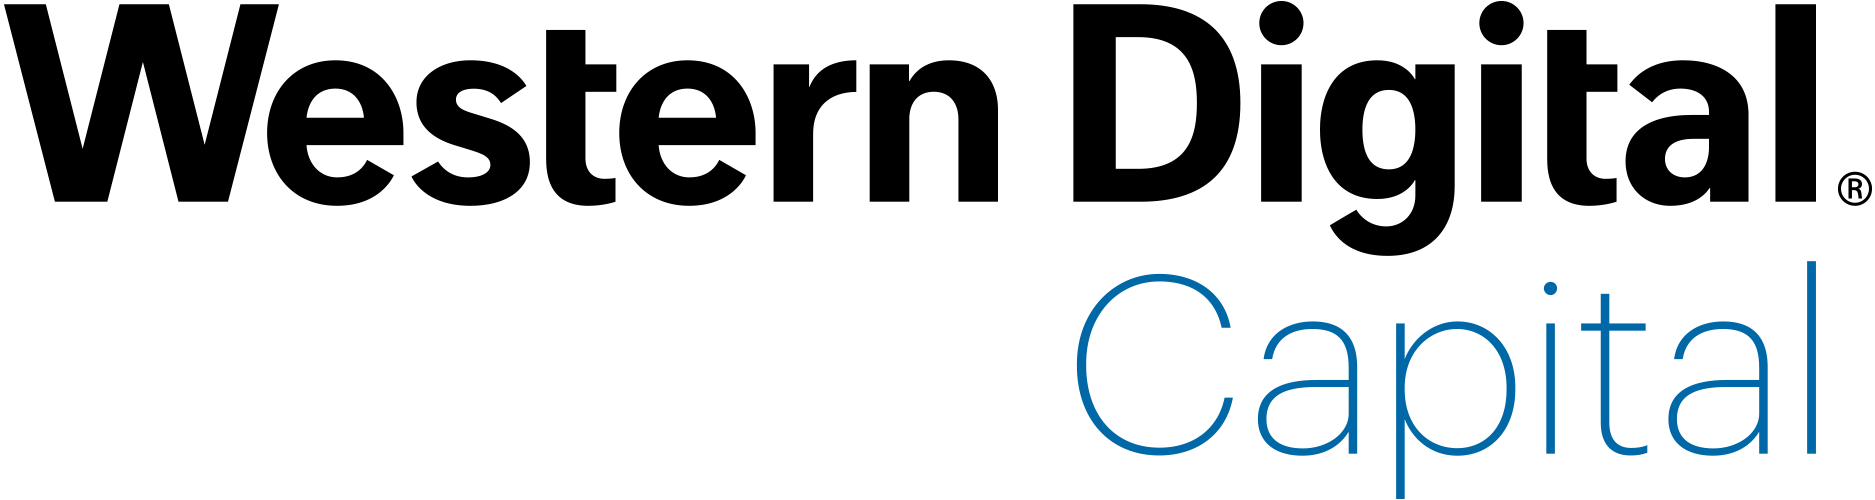 Western Digital Logo - Western Digital Capital - Canadian Financing Forum